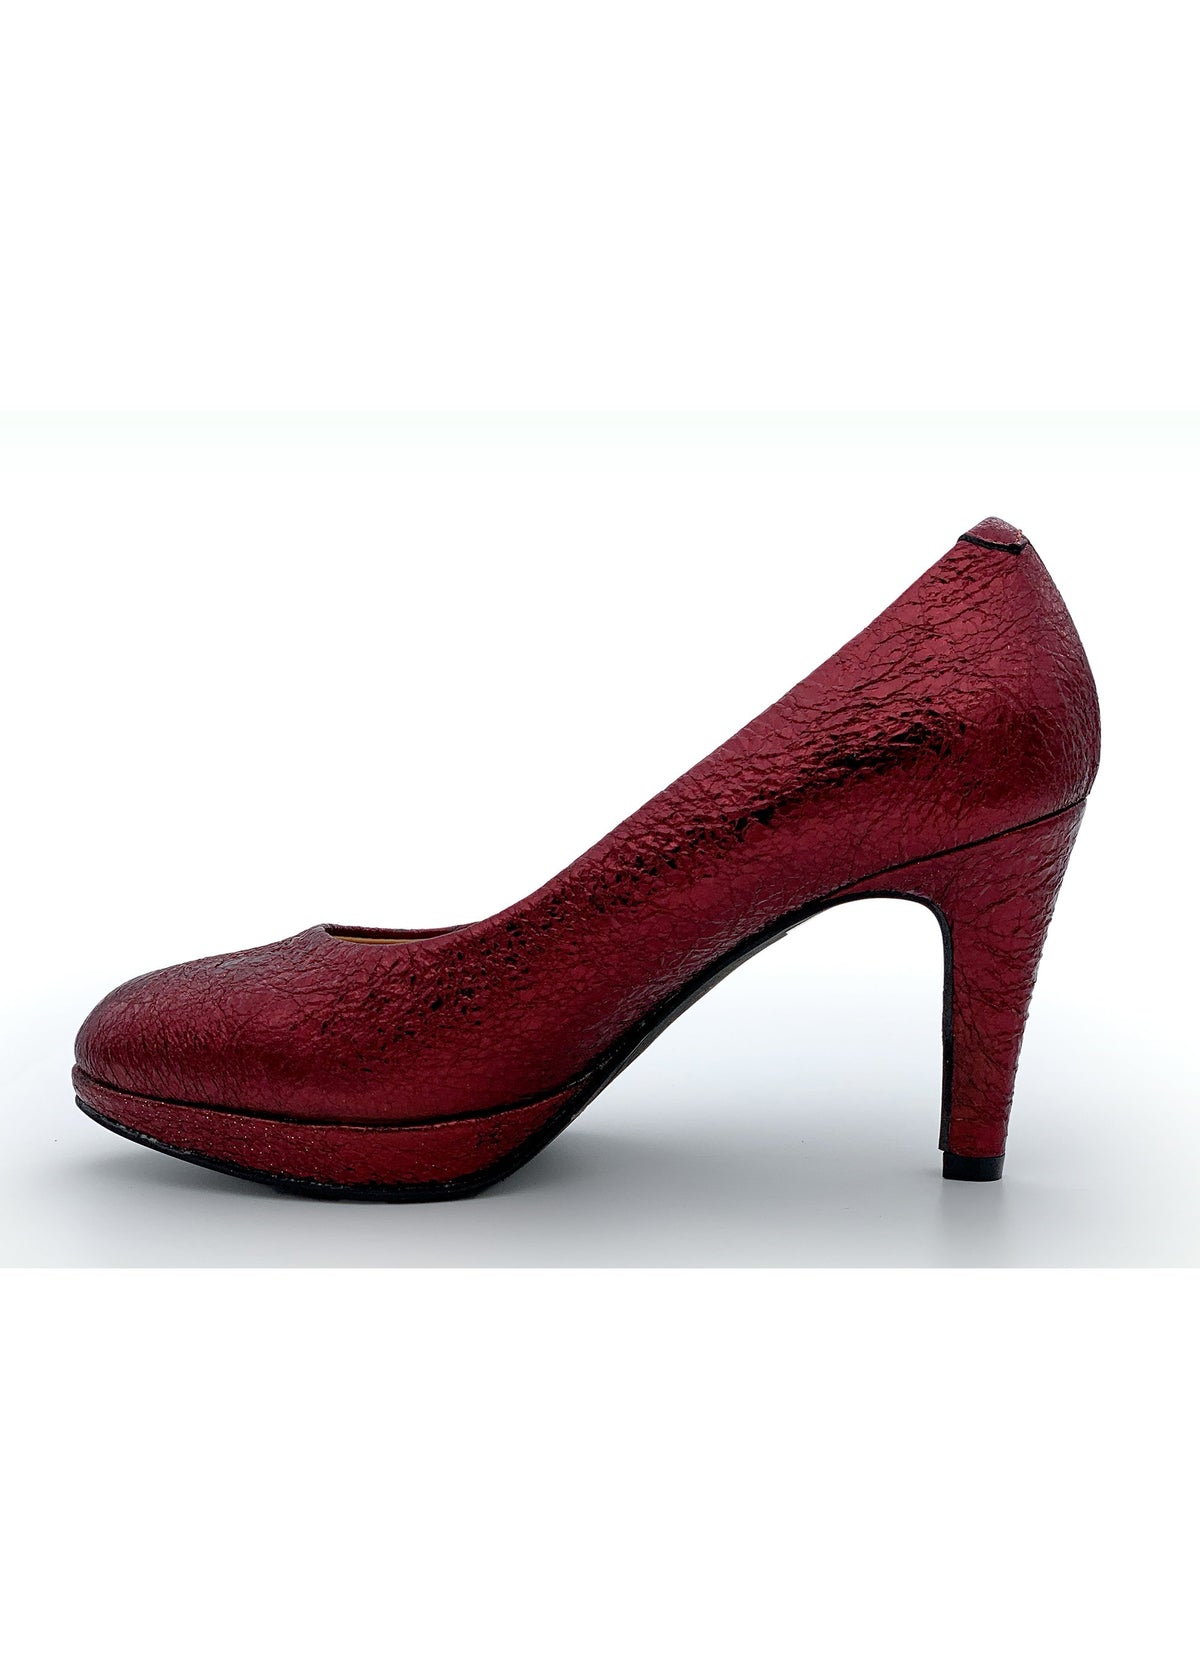 High heels - dark red